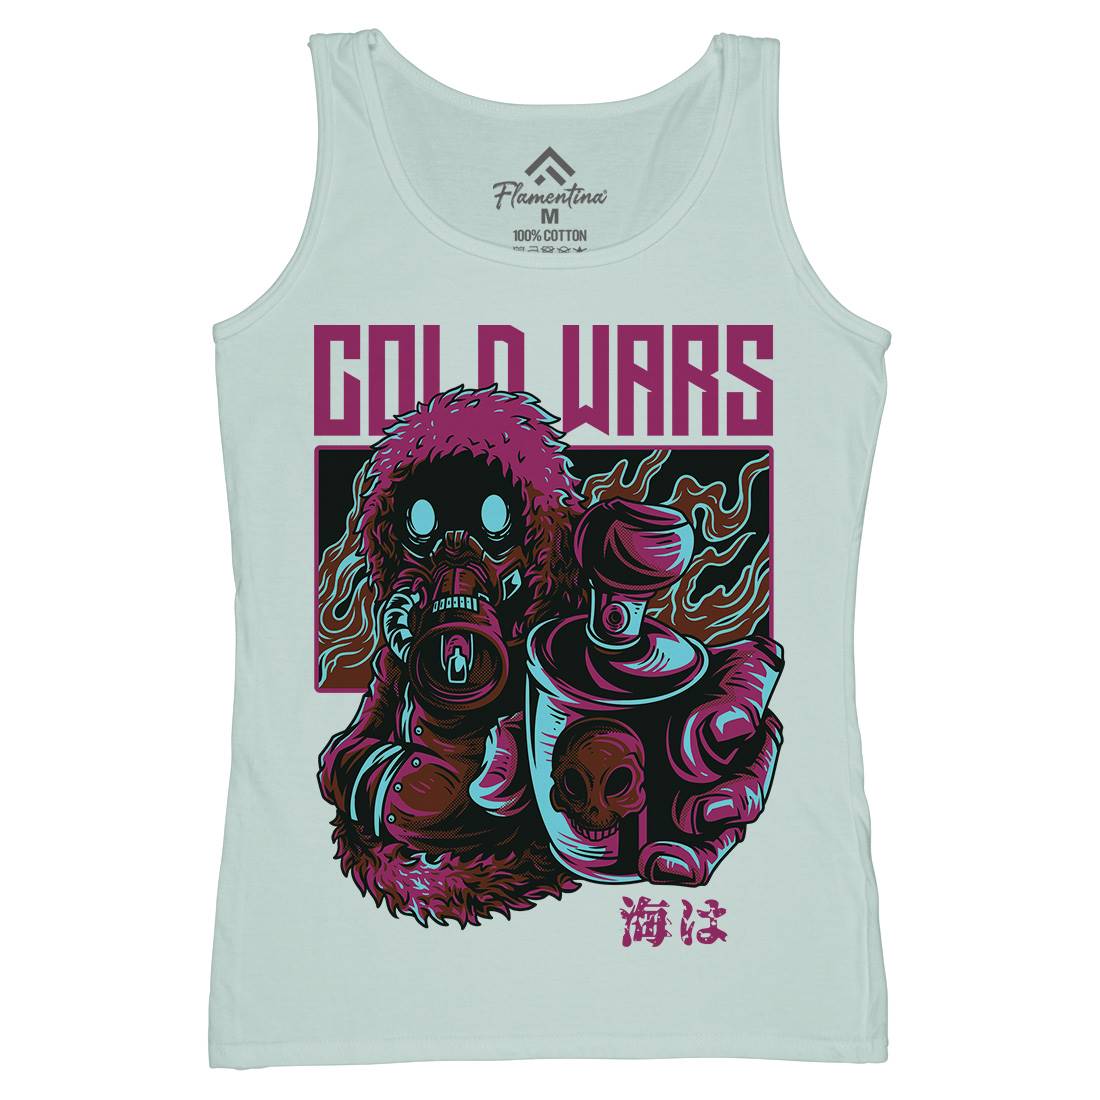 Cold Wars Womens Organic Tank Top Vest Graffiti D727